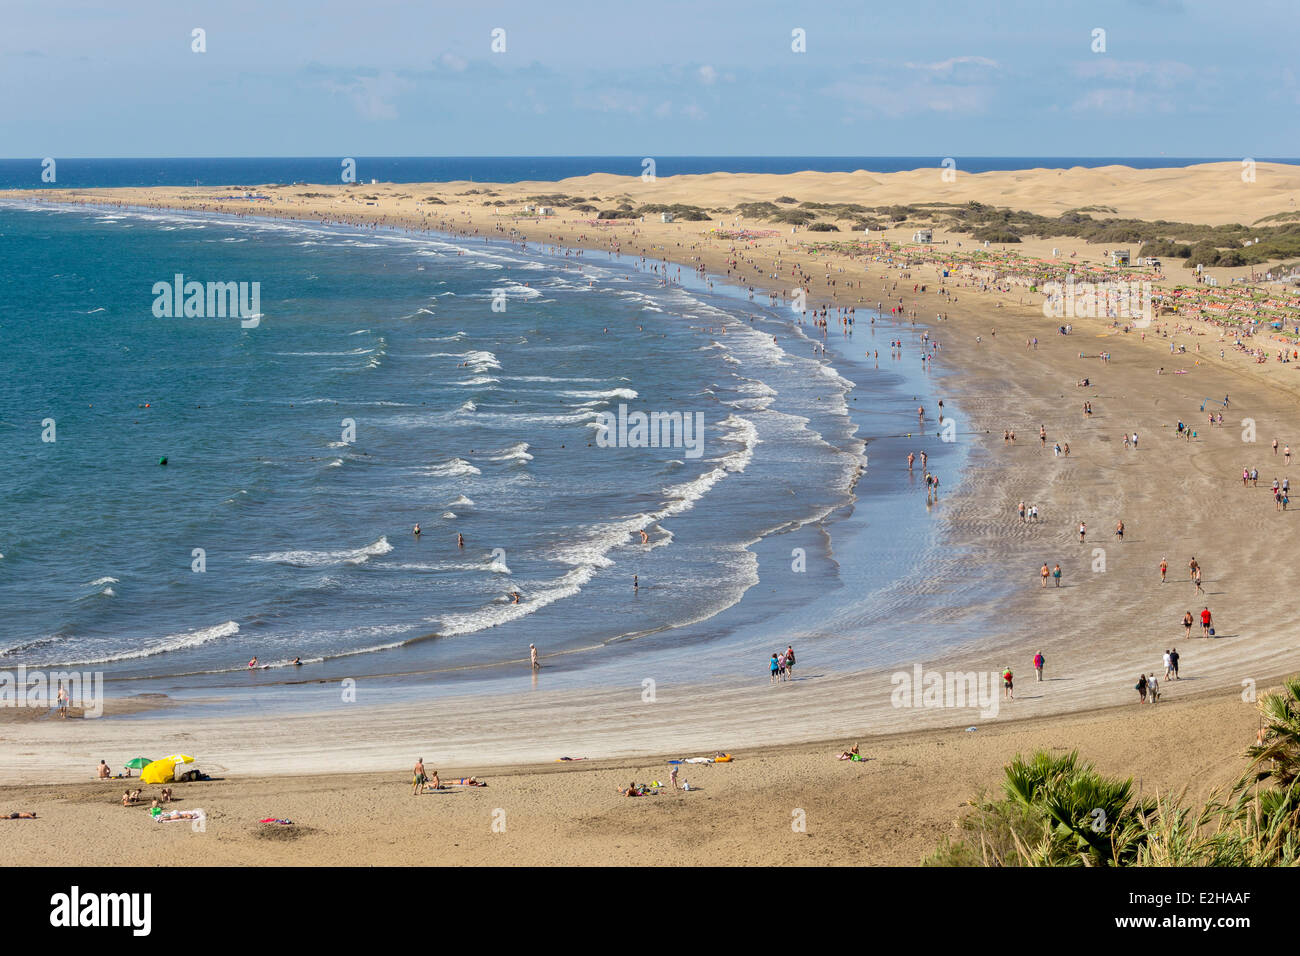 Spiaggia di Playa del Ingles, le dune di Maspalomas sul retro, costa meridionale dell'isola, Gran Canaria Isole Canarie Foto Stock